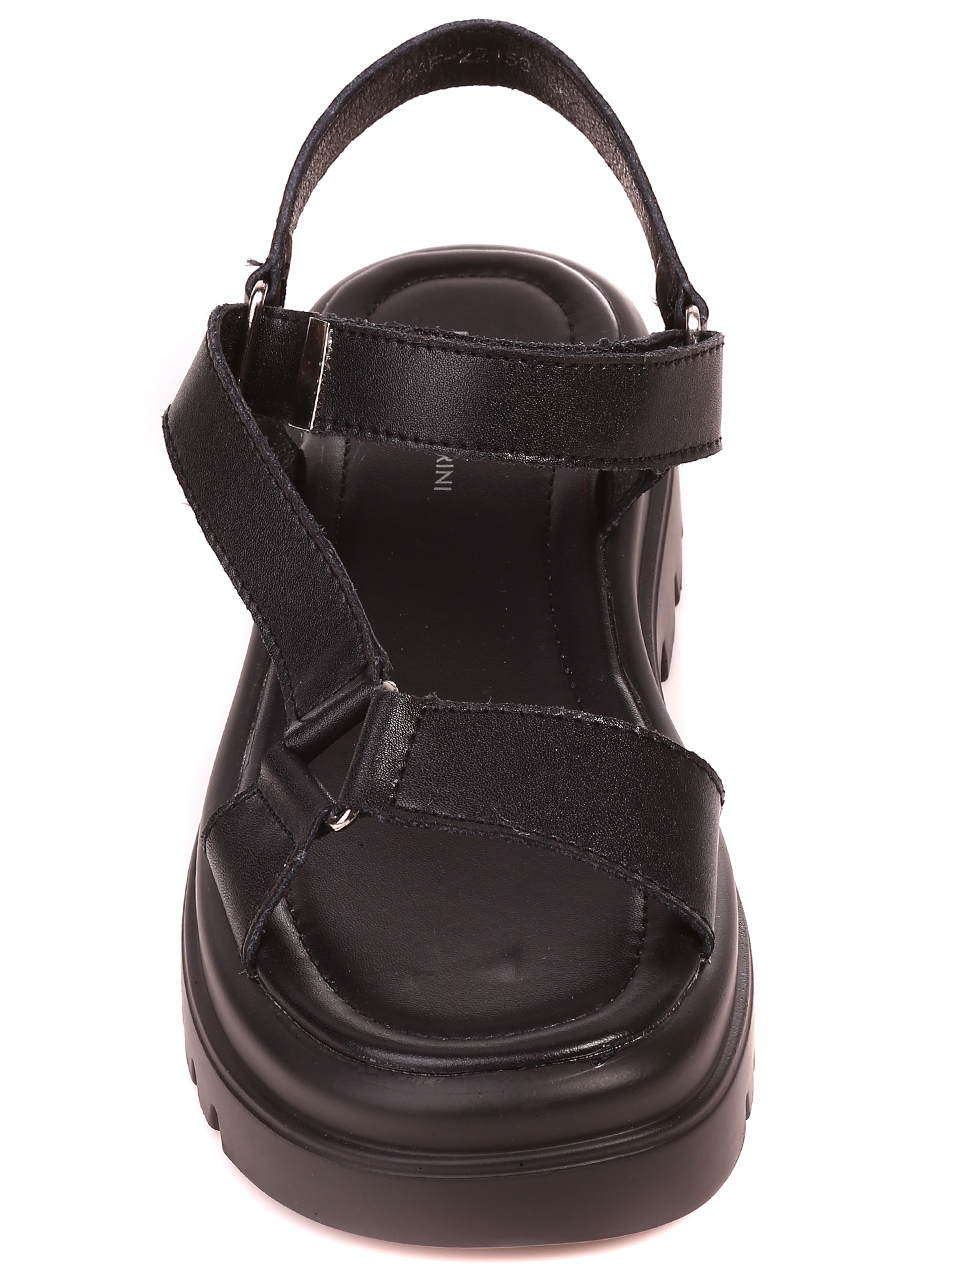 Ежедневни дамски сандали на платформа от естествена кожа 4AF-22153 black